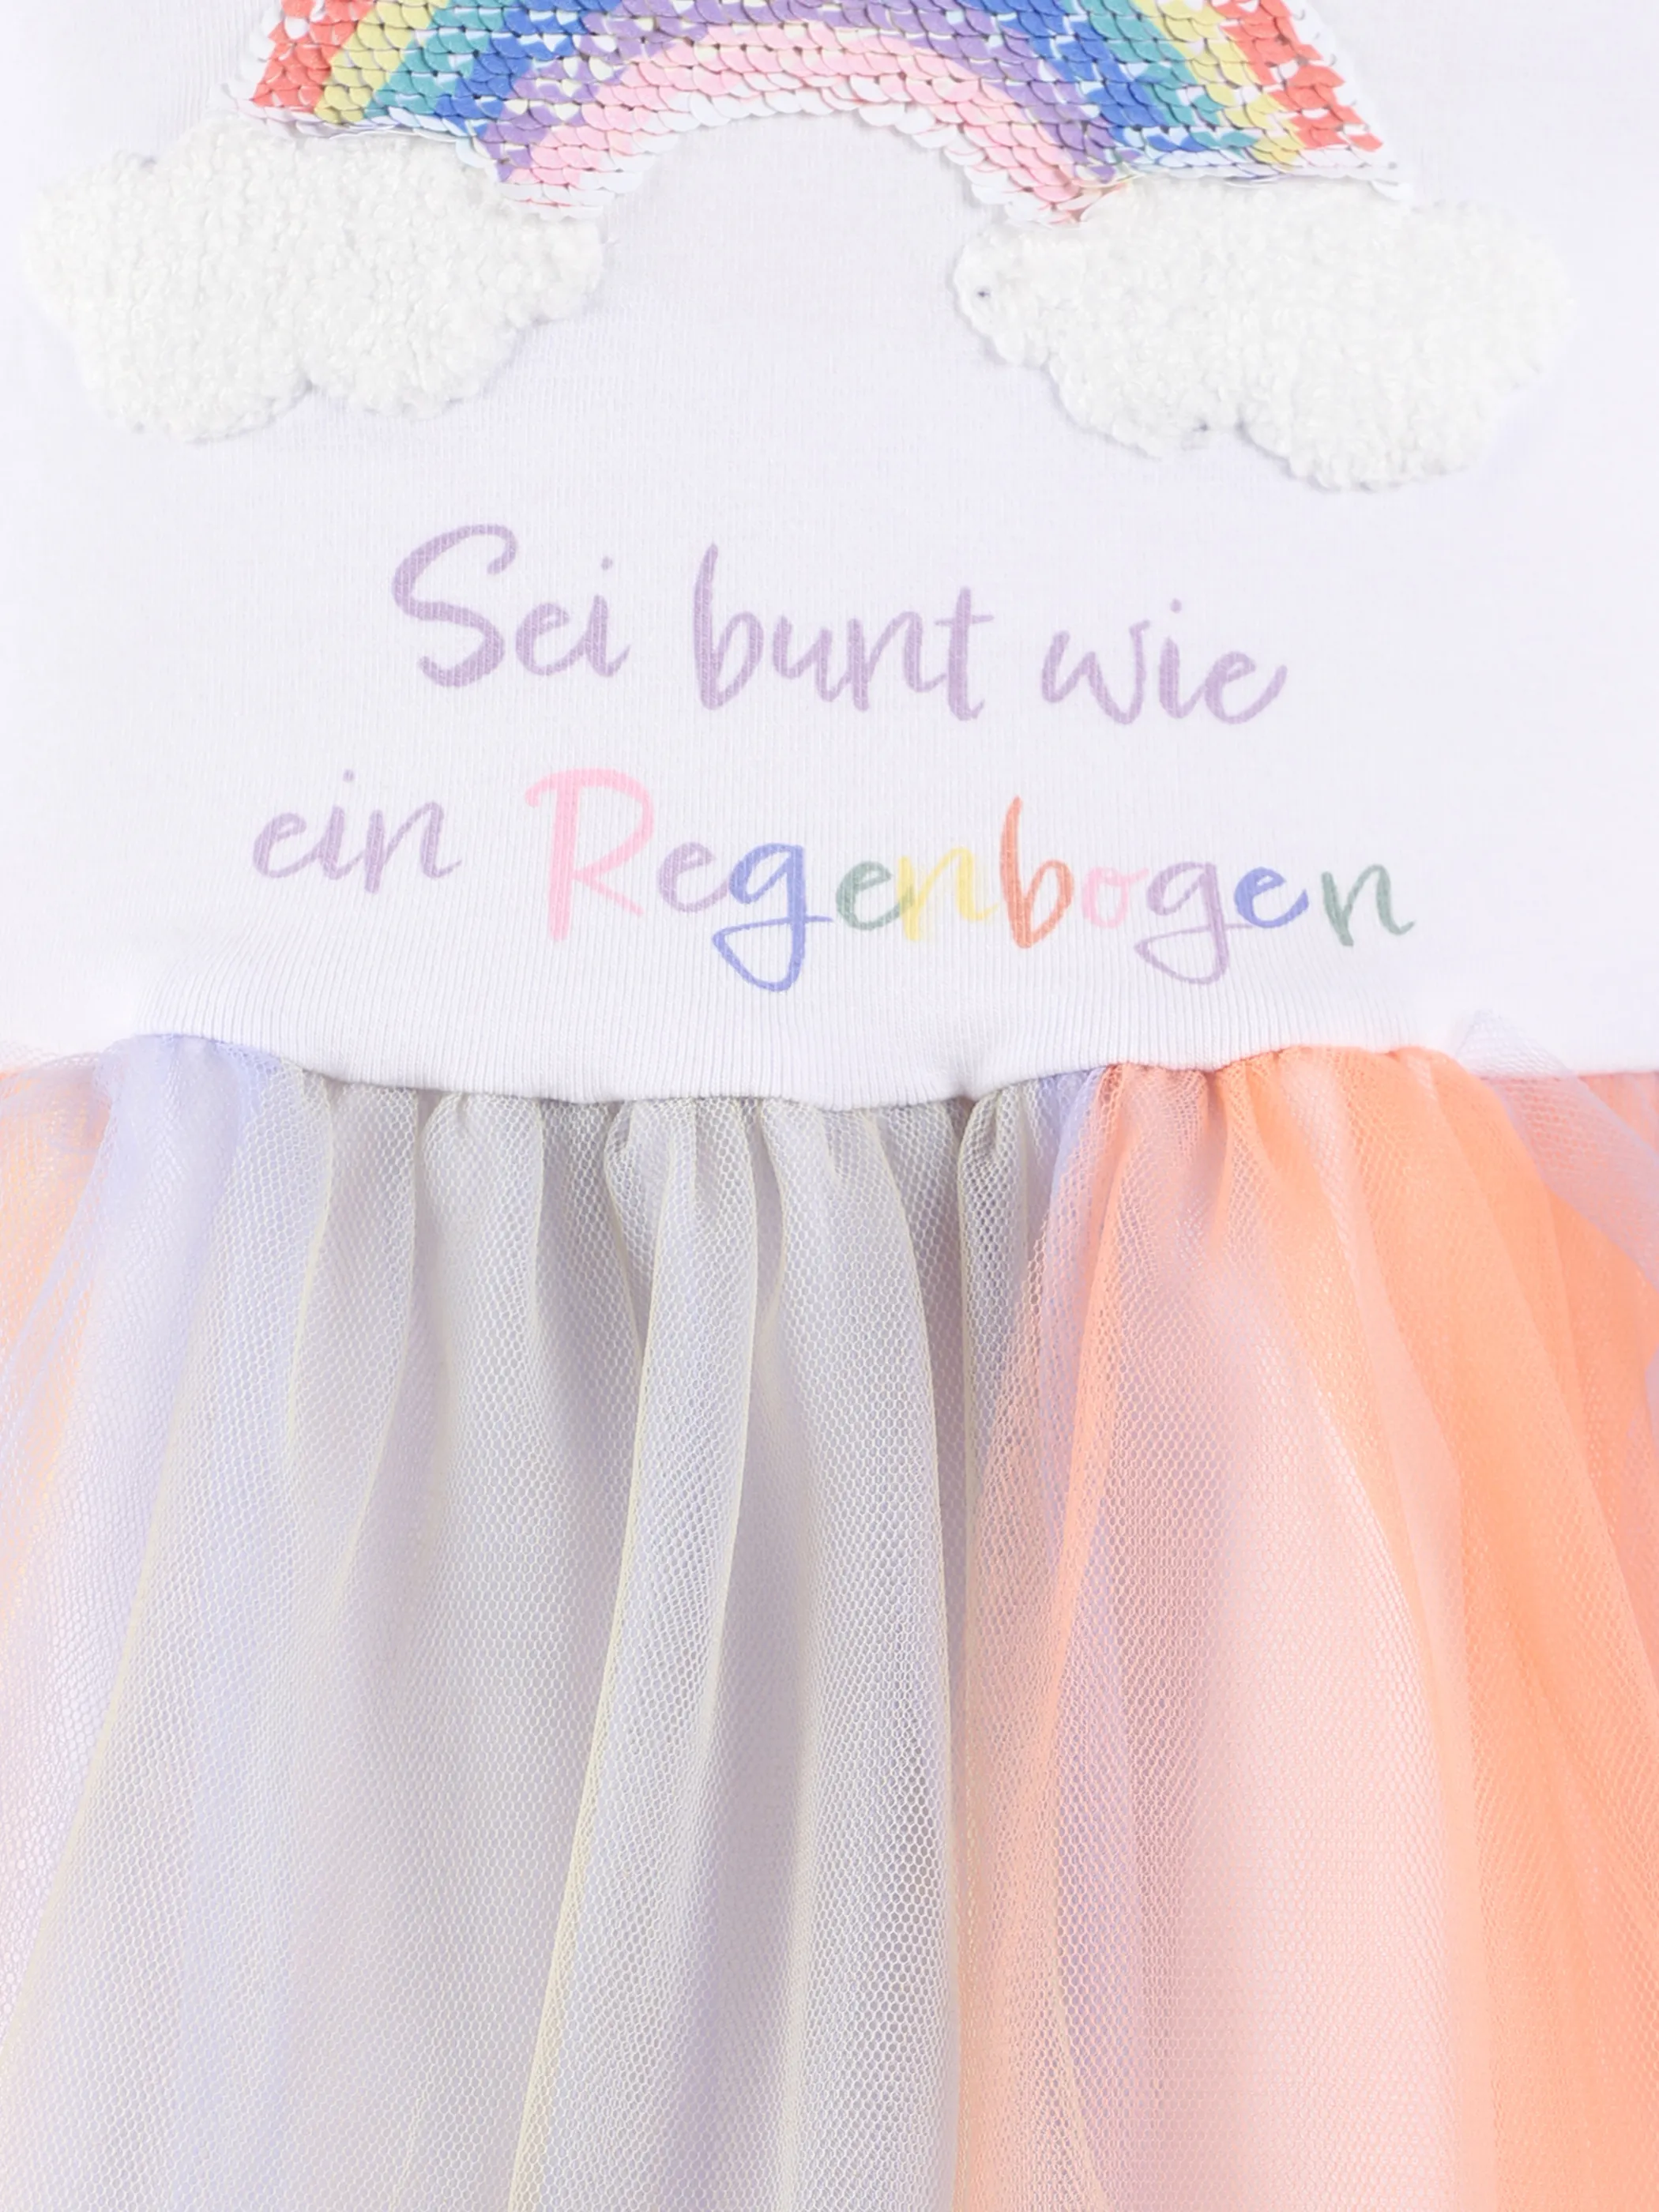 Stop + Go KM Tüll Kleid in rose und bunt mit Appli. Weiß 875495 MULTICOLOR 3